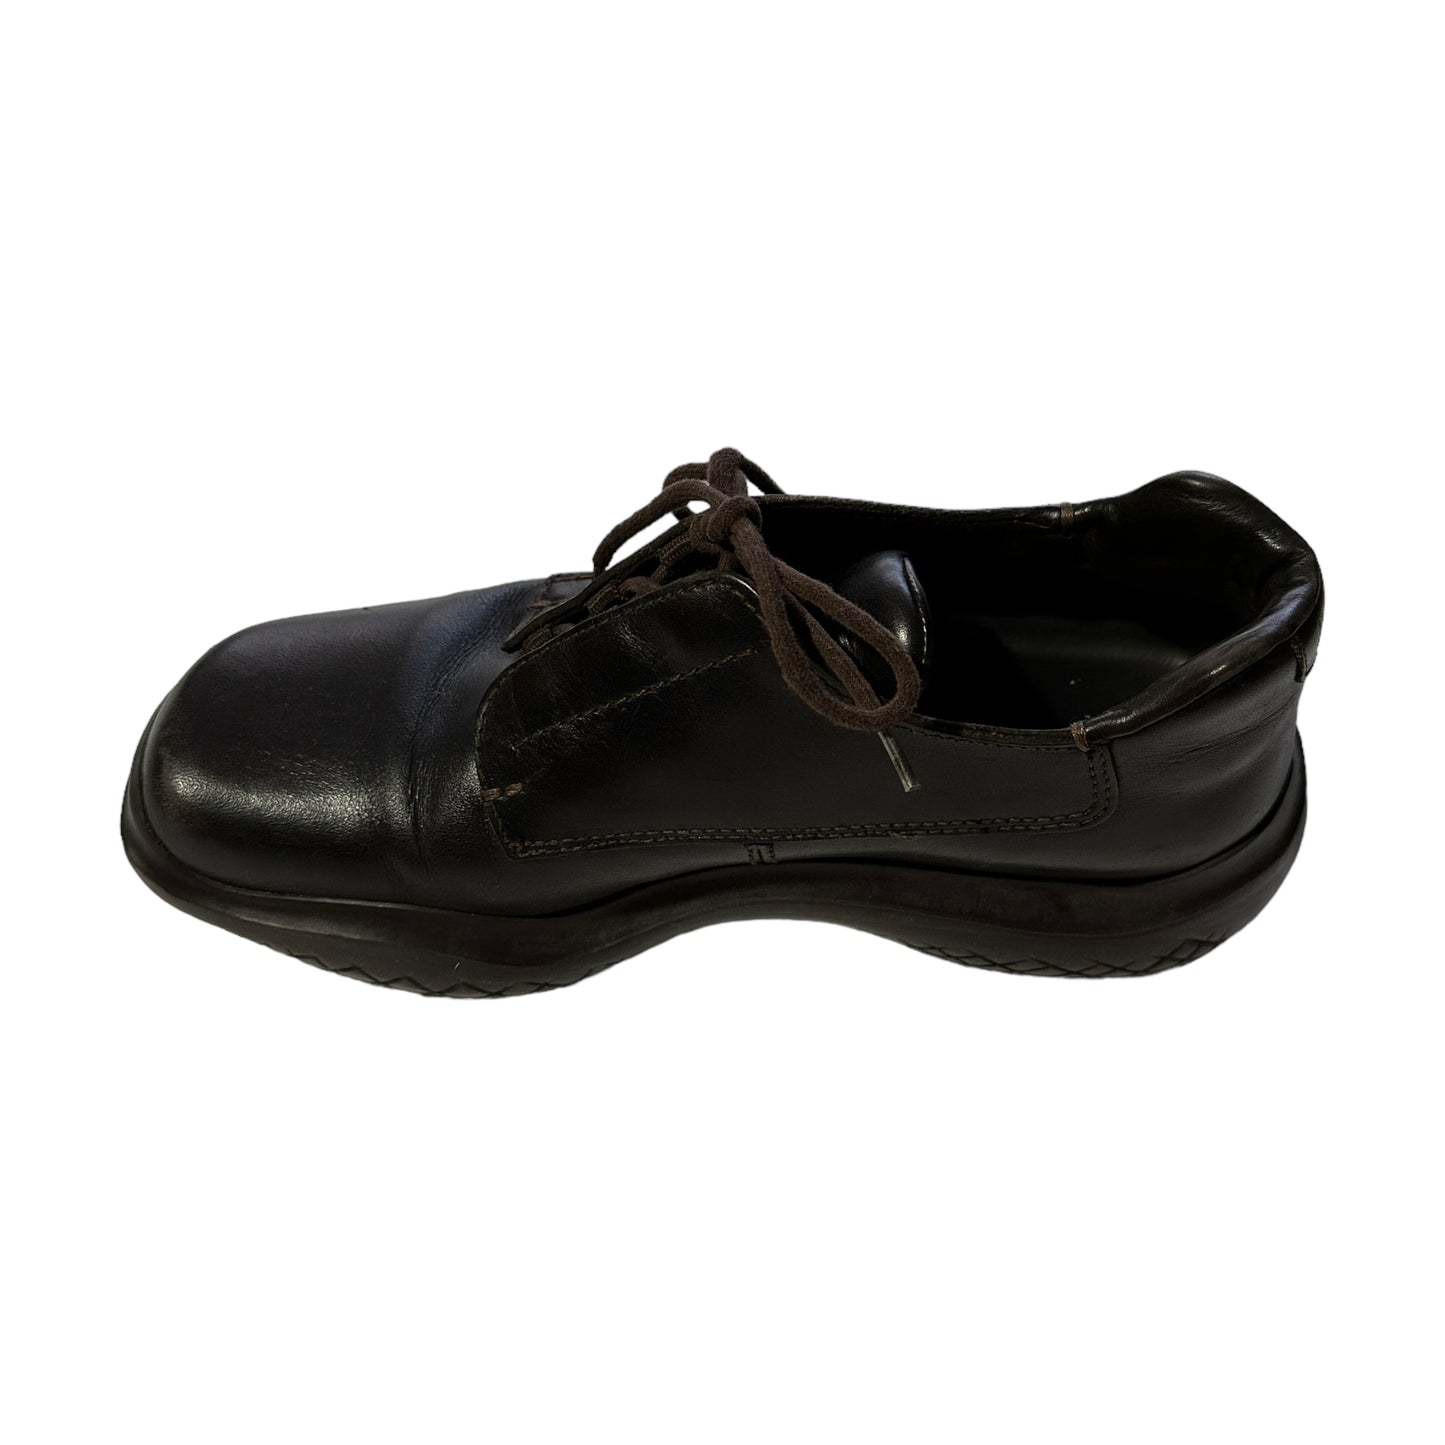 F/W 1999 Prada Vibram Brown Leather Shoes (40EU)